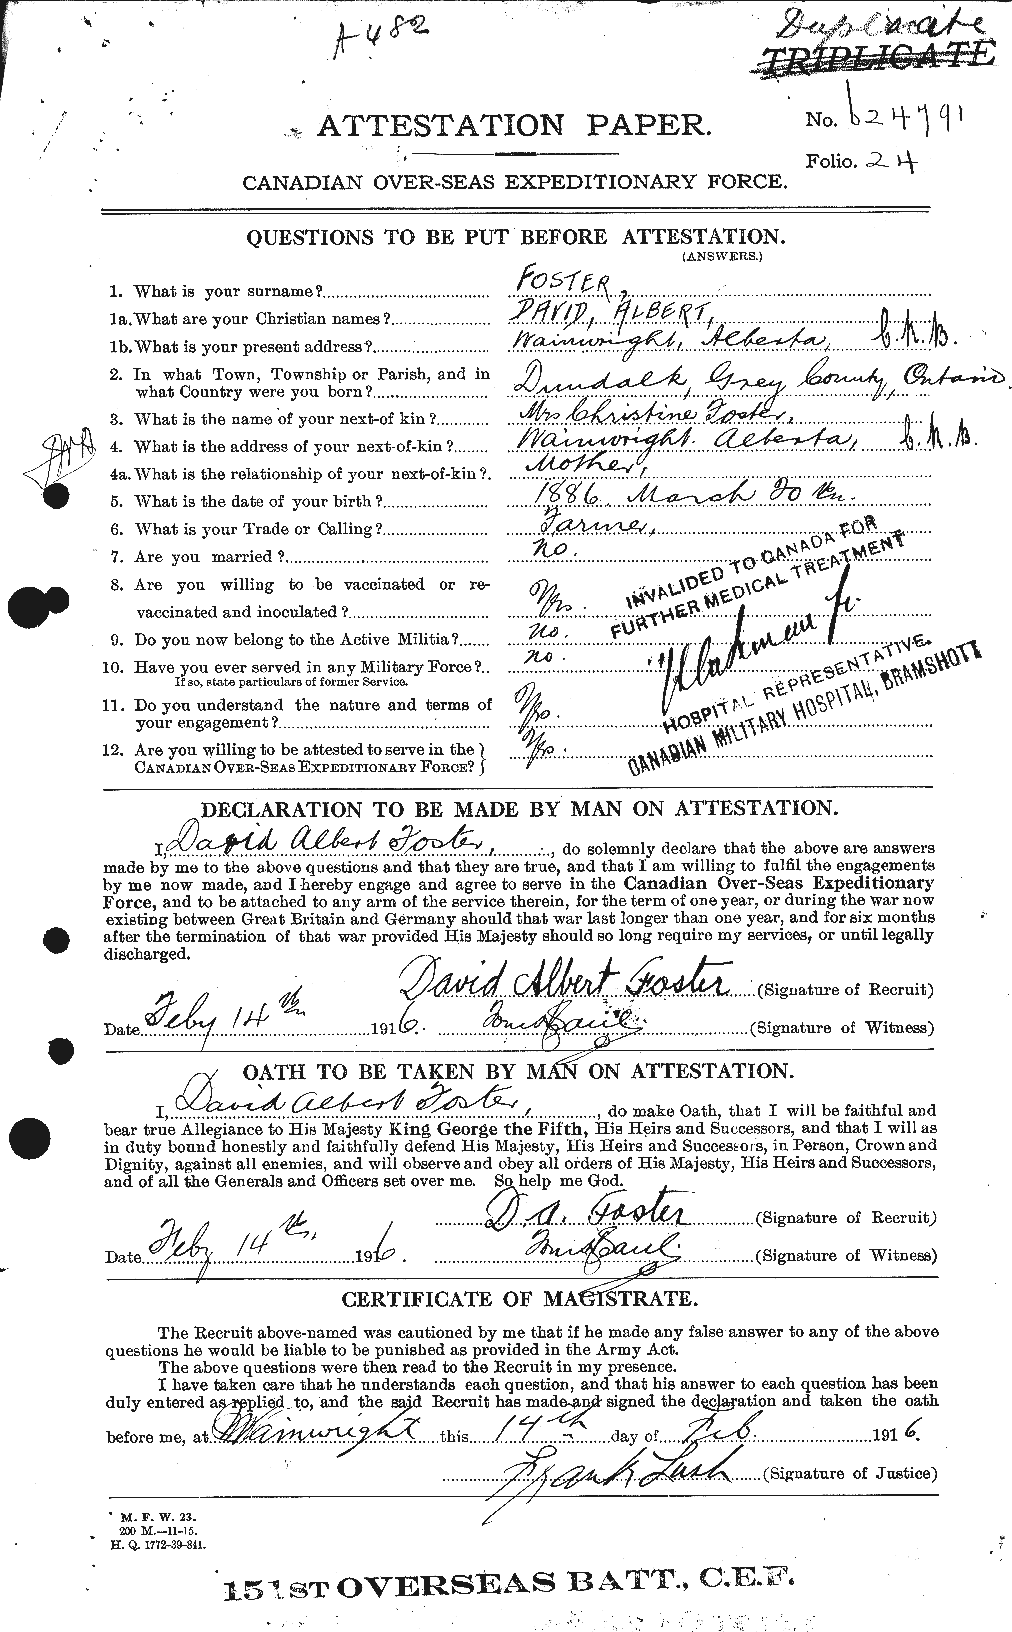 Dossiers du Personnel de la Première Guerre mondiale - CEC 330557a